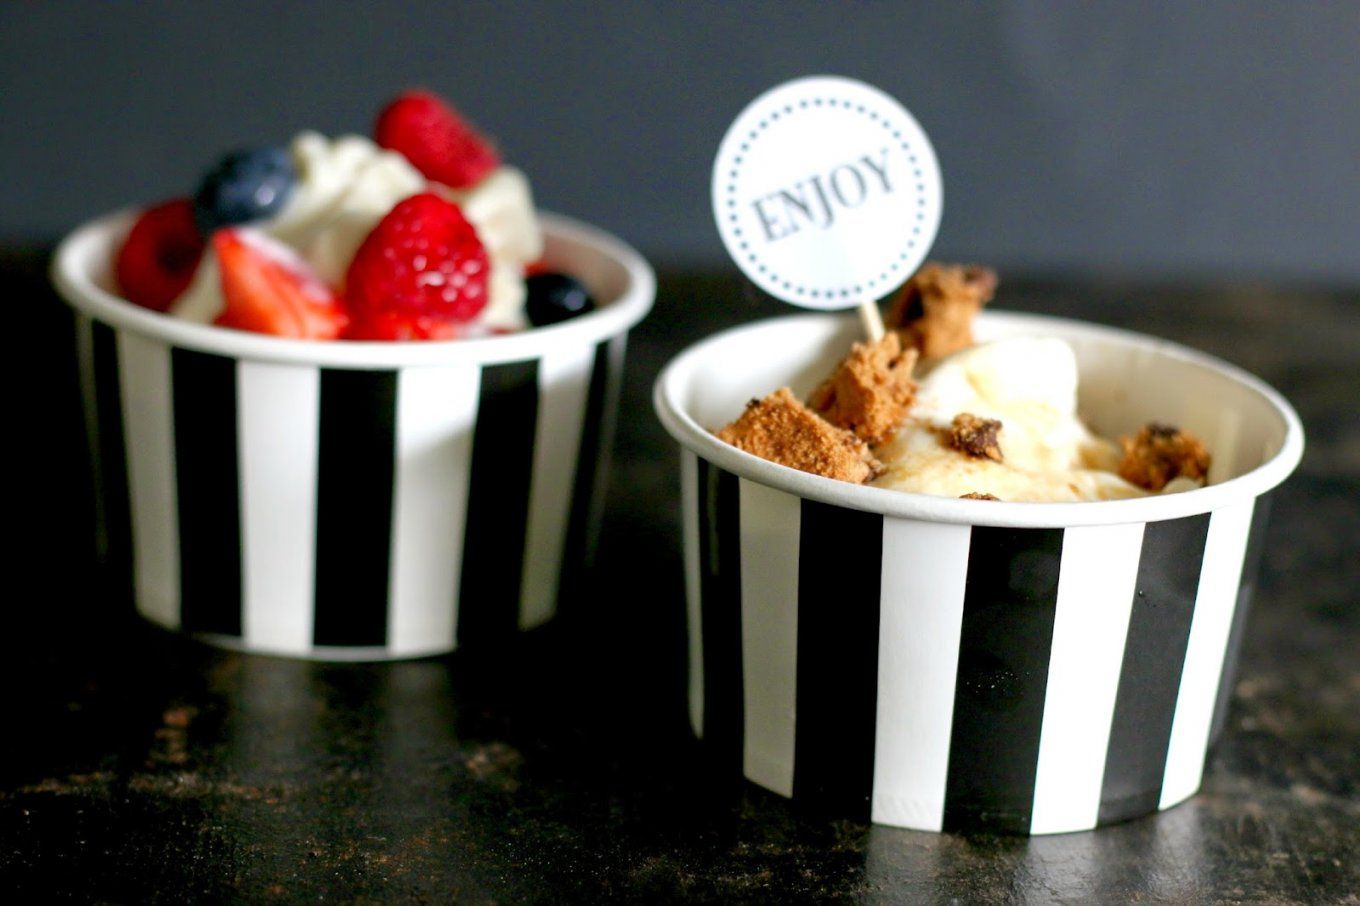 Einfach Selber Machen Frozen Yoghurt (Vegan) Mit Toppings  Volle Lotte von Frozen Yogurt Selbst Machen Photo